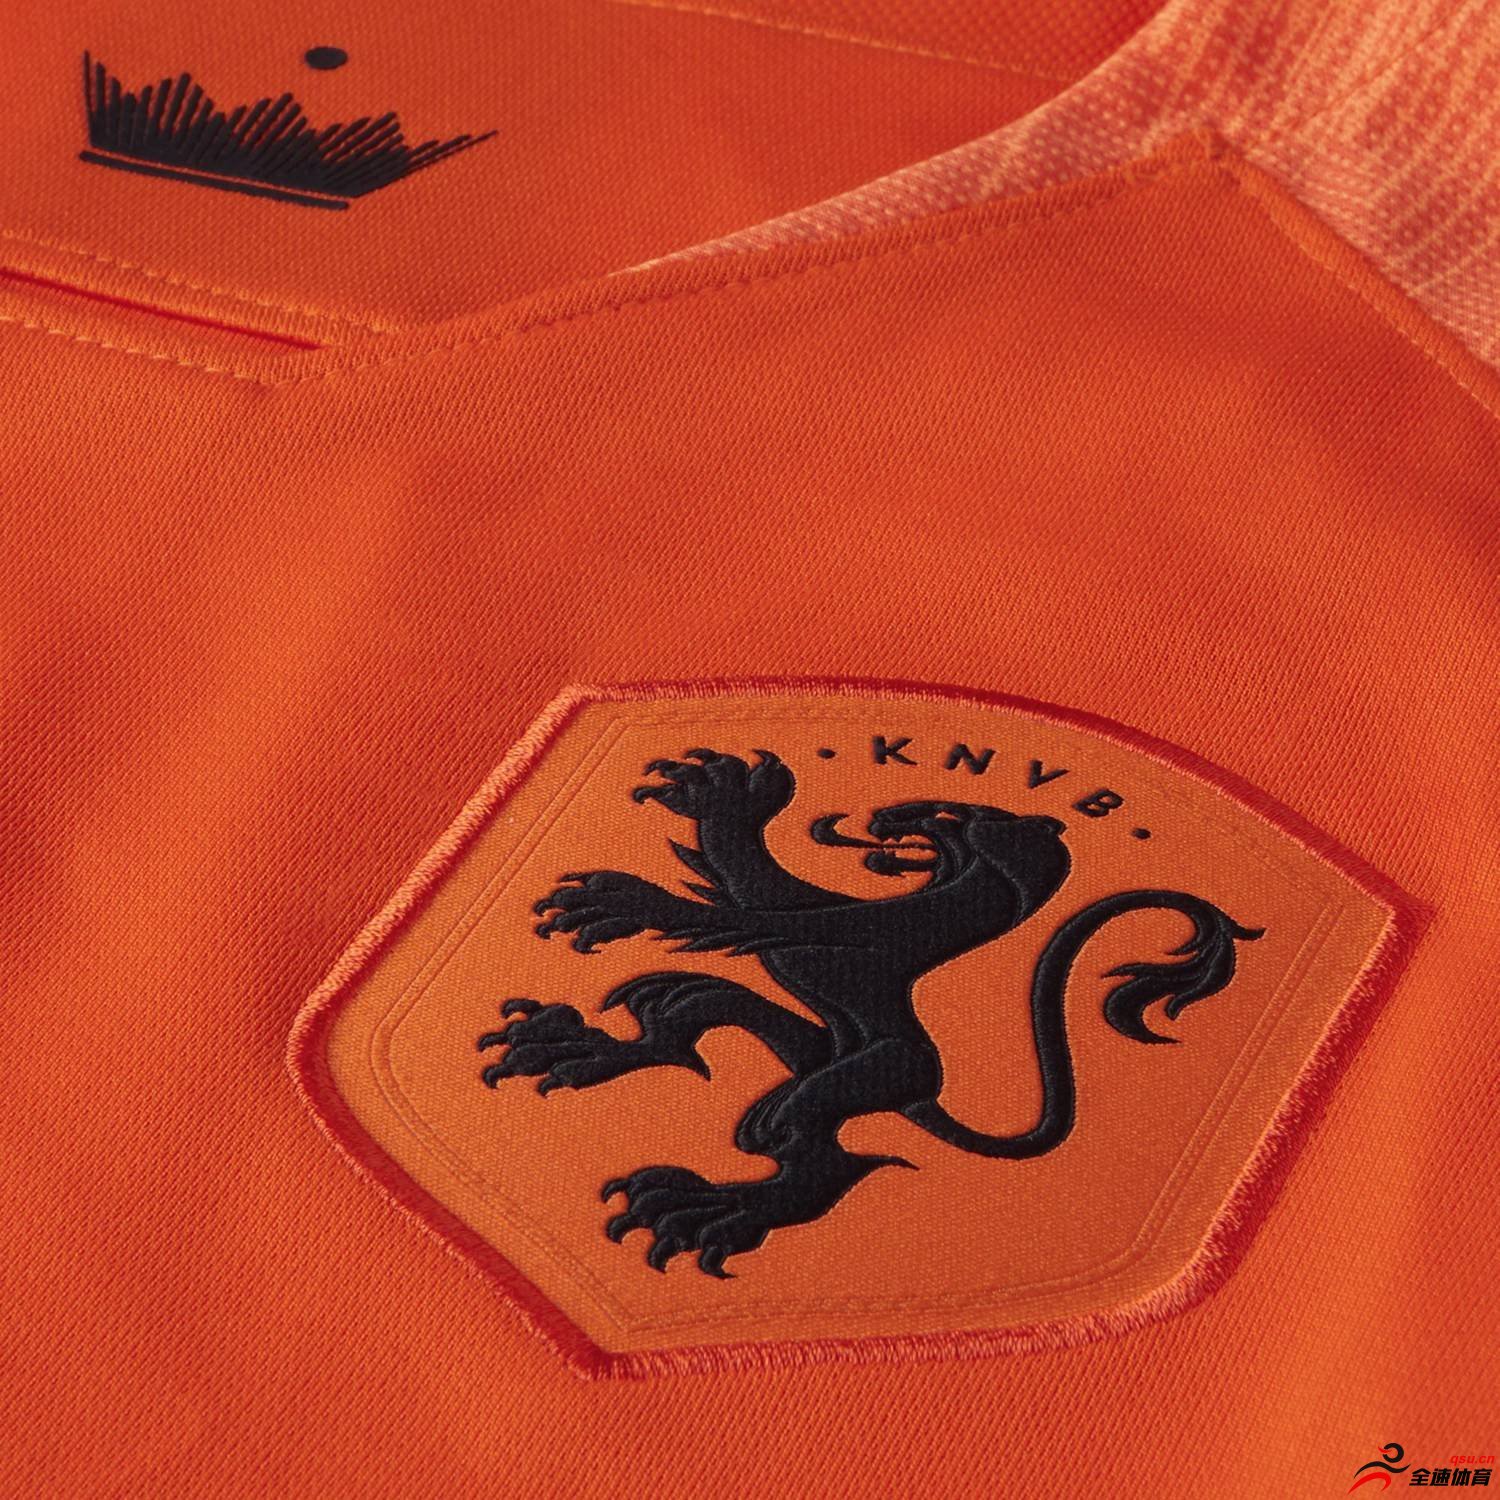 耐克与皇家荷兰足球协会携手发布荷兰国家队2018全新主客场球衣